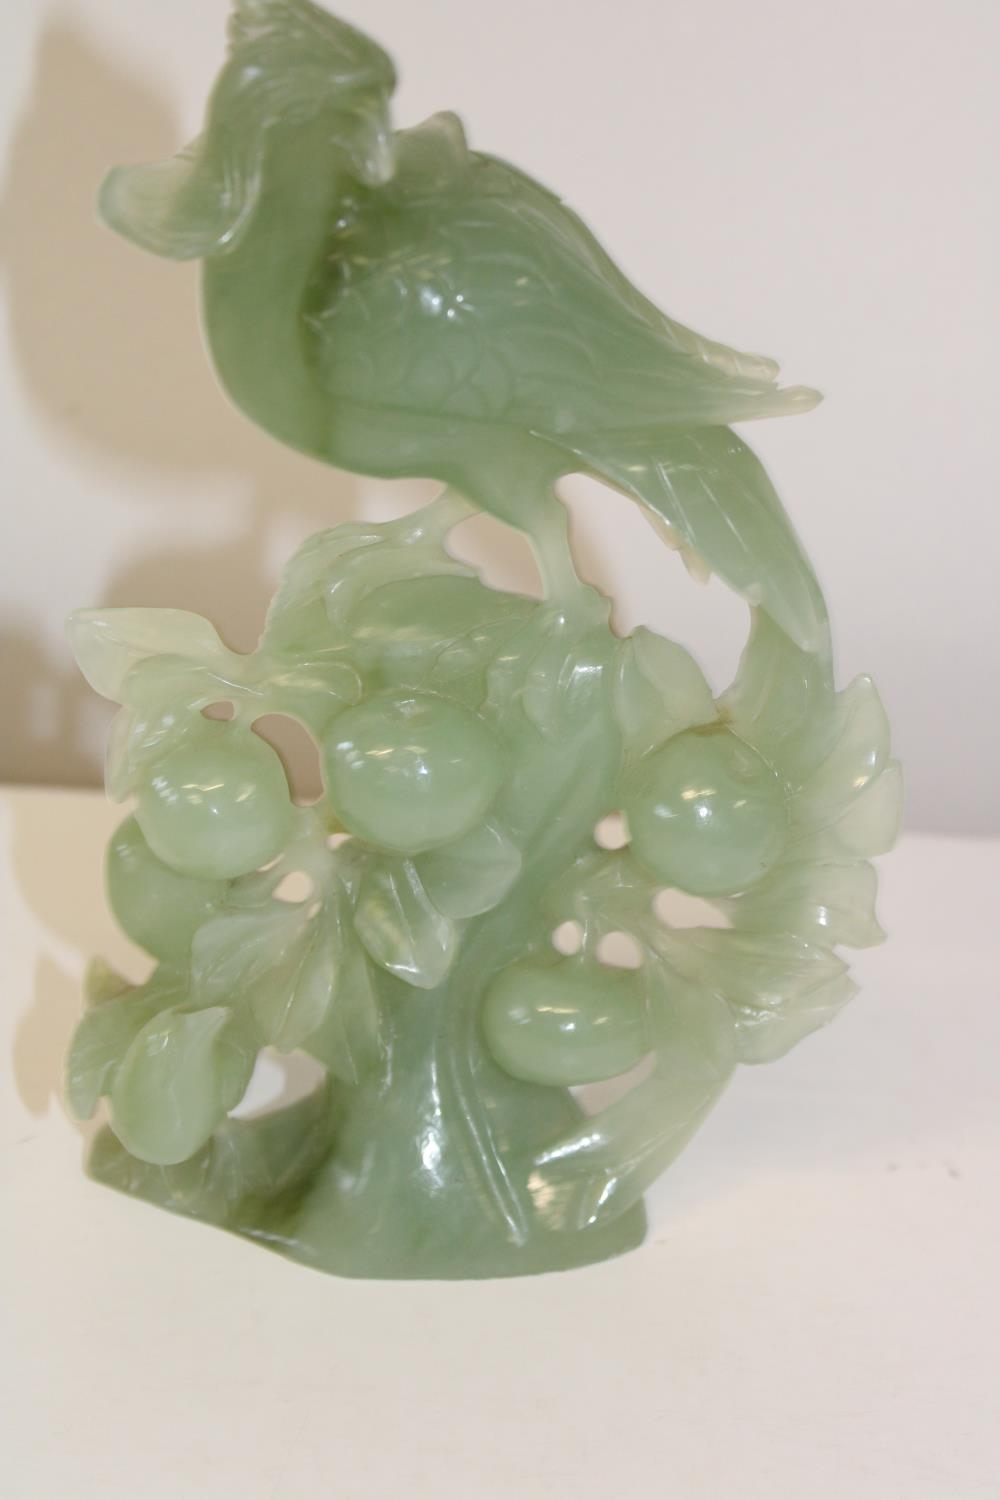 A green jade bird sculpture 21cm tall